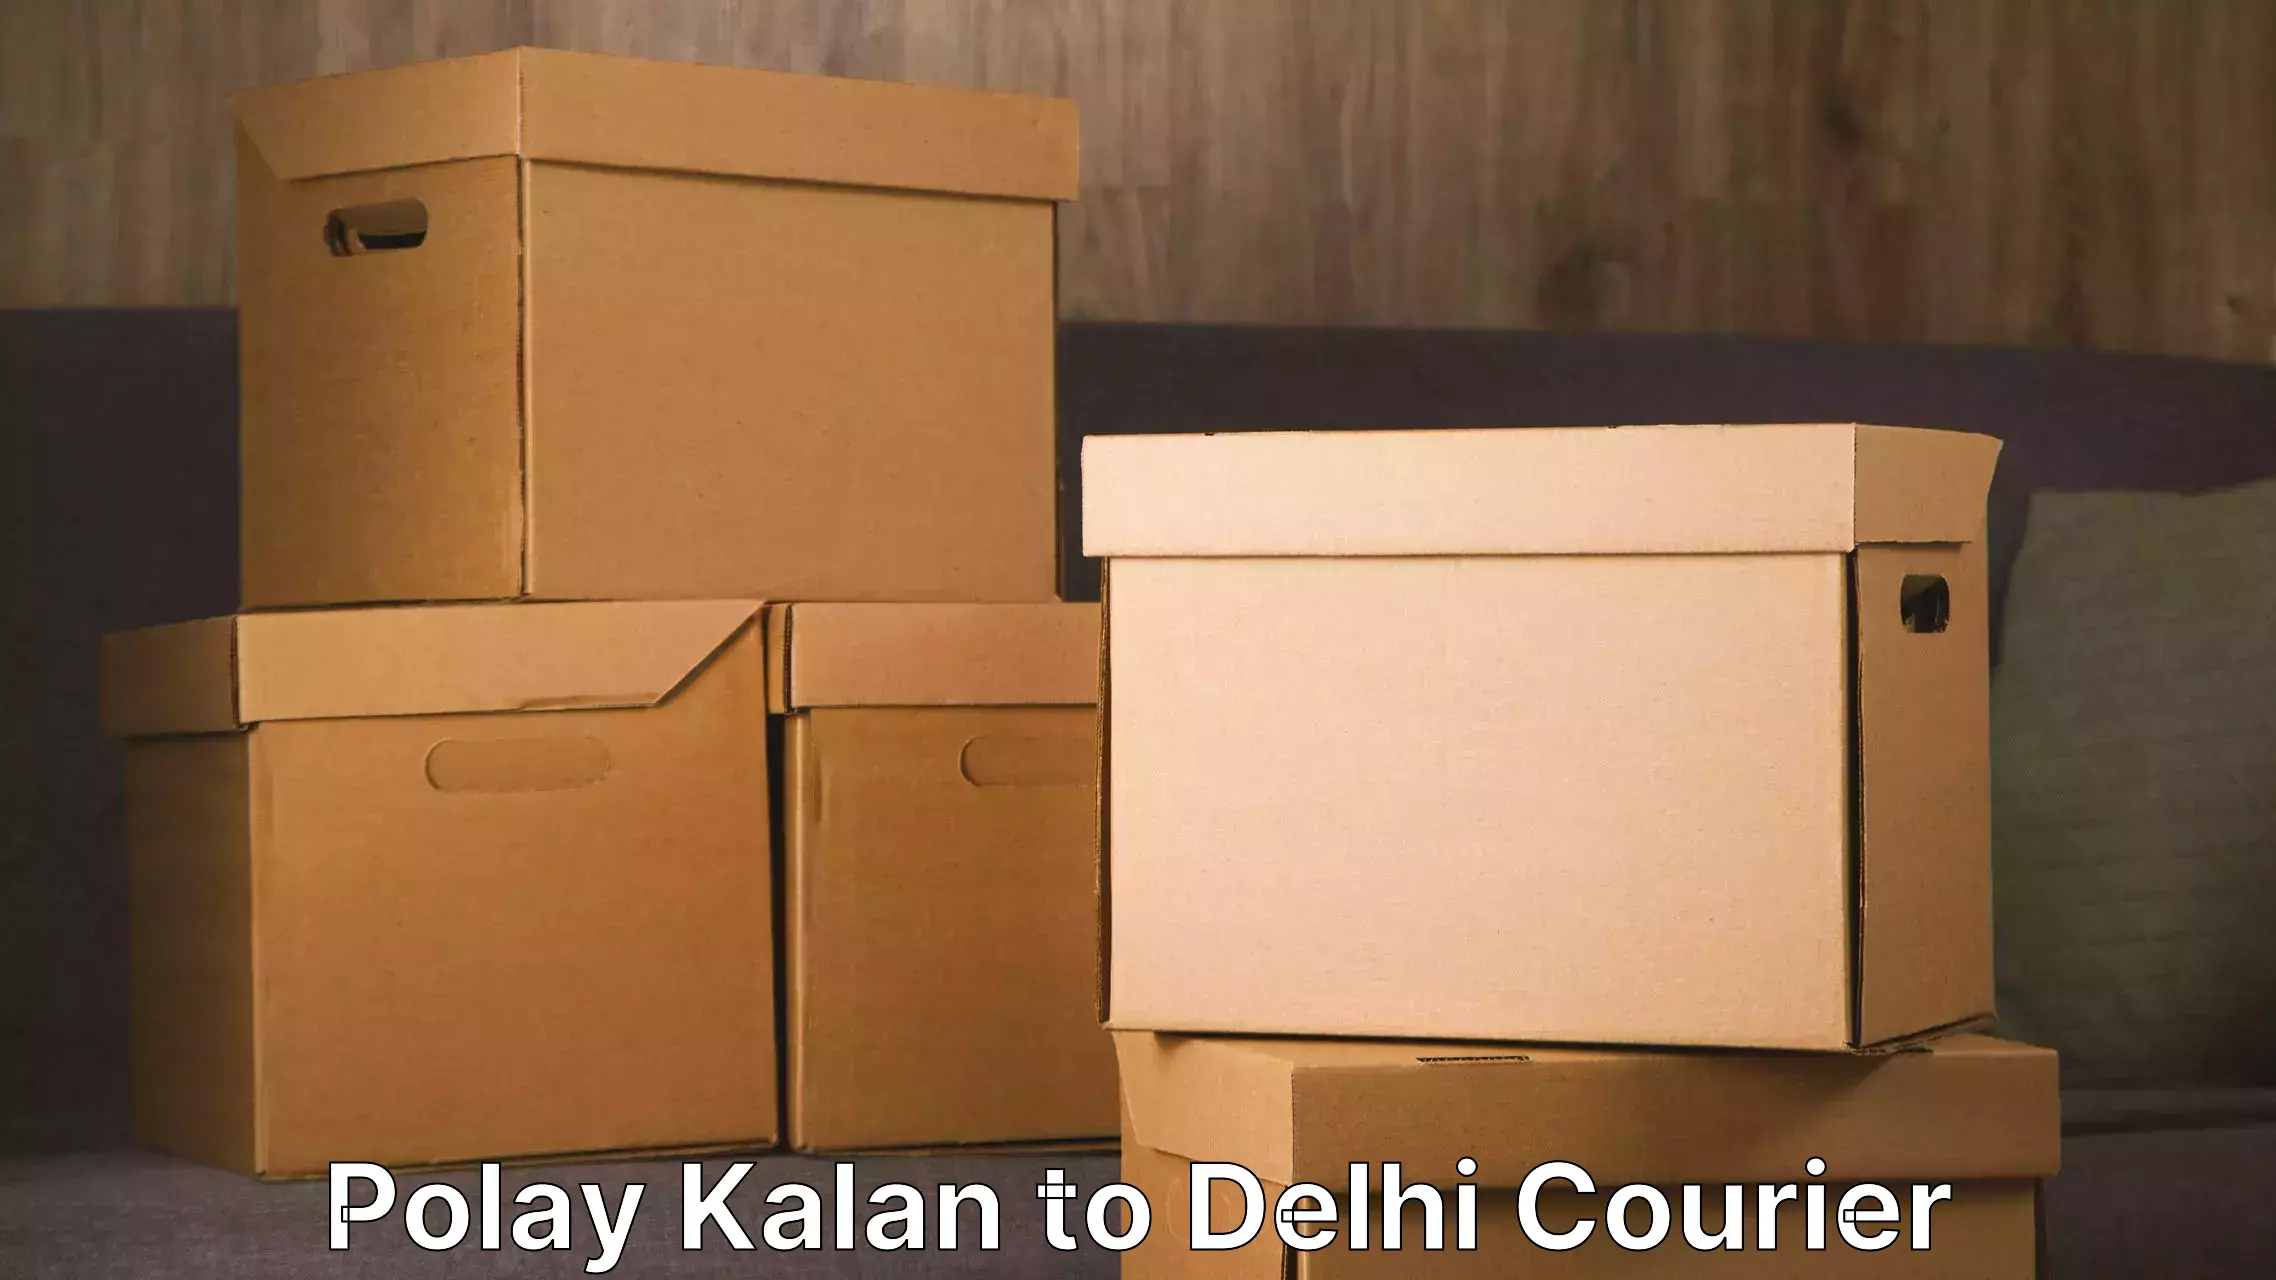 Professional movers and packers Polay Kalan to Kalkaji